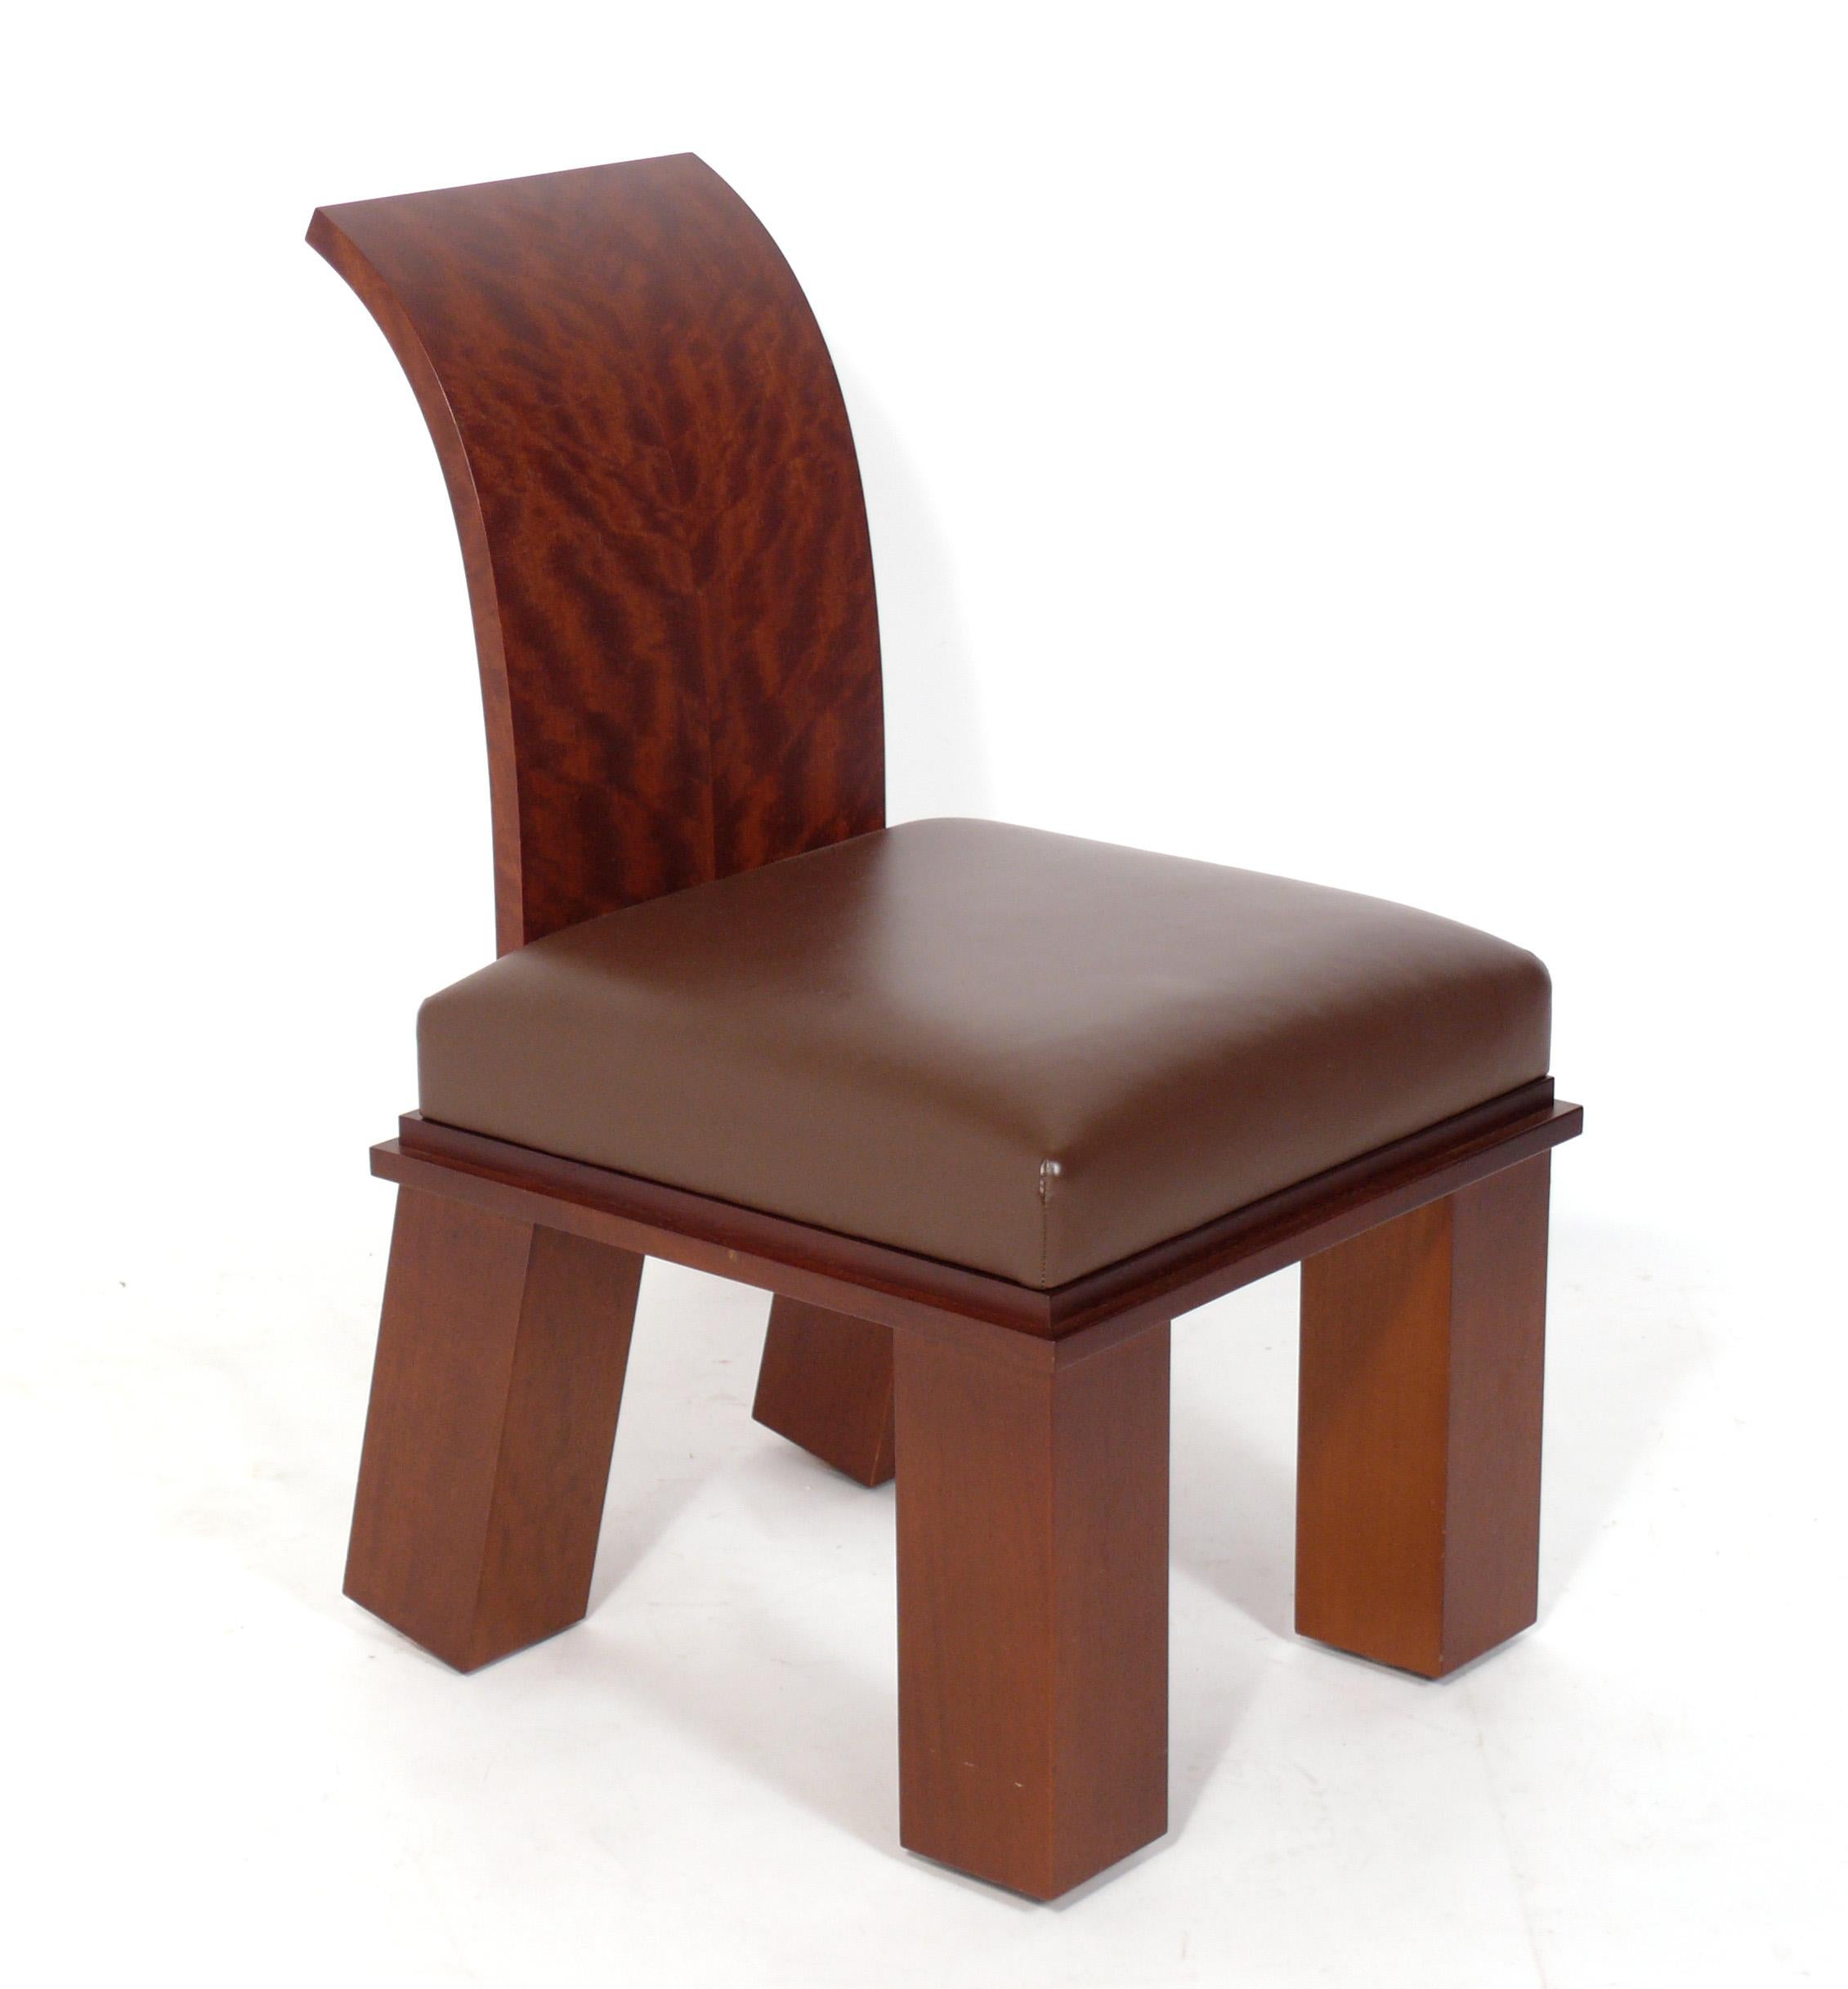 Ensemble de huit chaises à manger sculpturales, conçues par Wendell Castle, américain, vers les années 2010. Signé avec le monogramme de la marque de Wendell Castle sur la jambe. Wendell Castle a accordé une licence pour plusieurs de ses modèles